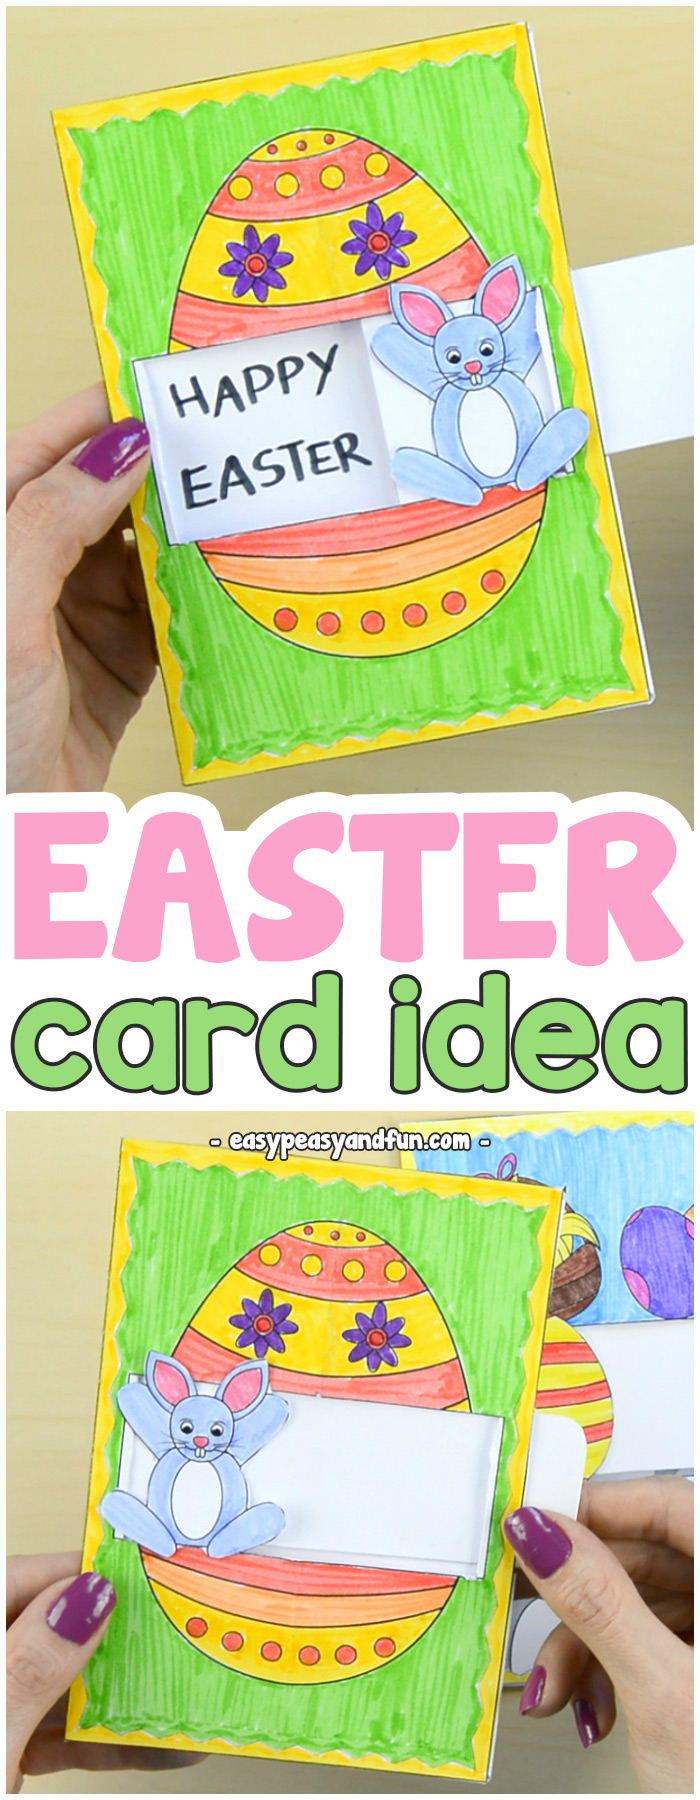 Hidden message Easter card idea for kids #Eastercraftsforkids #papercraftsforkids #DIYcardideas